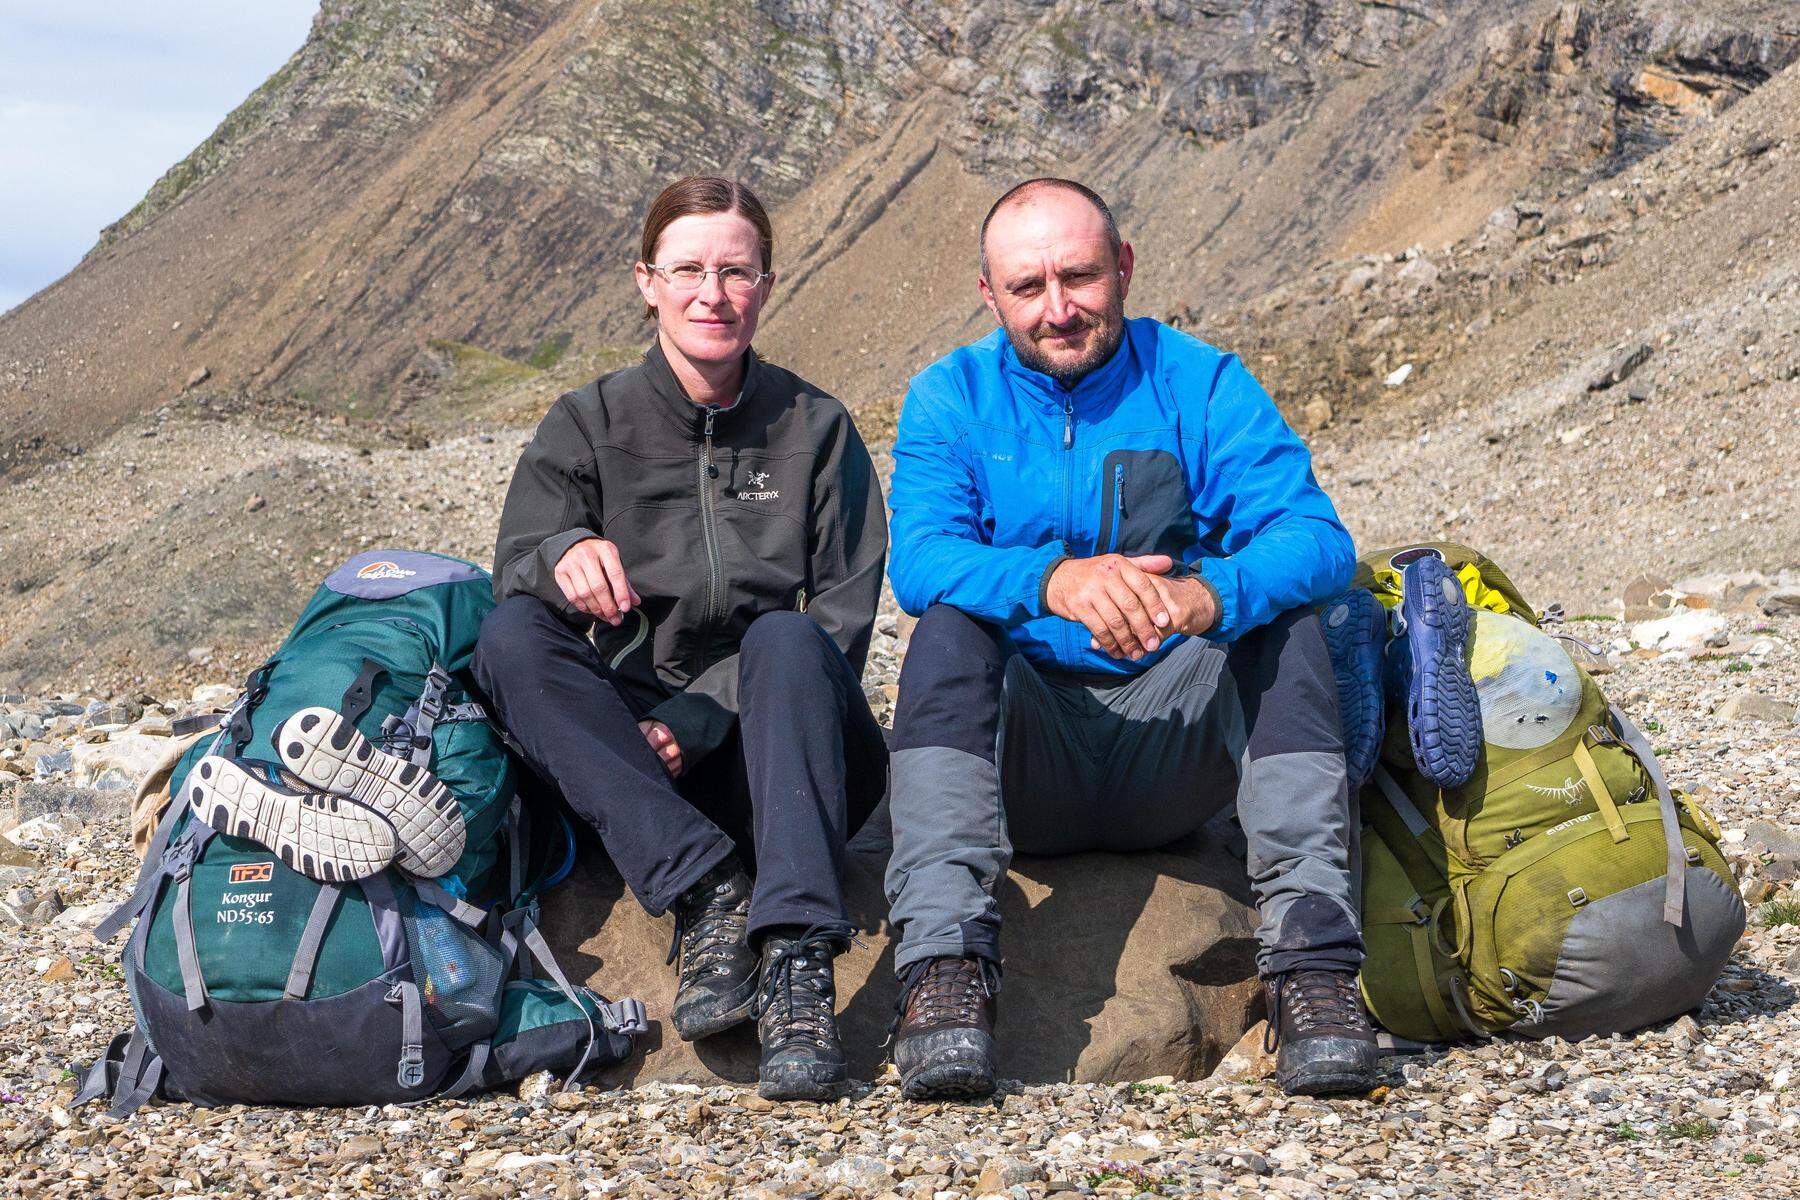 Vortrag in Rosental | Steirisches Paar verrät die schönsten Wanderwege und Berggipfel